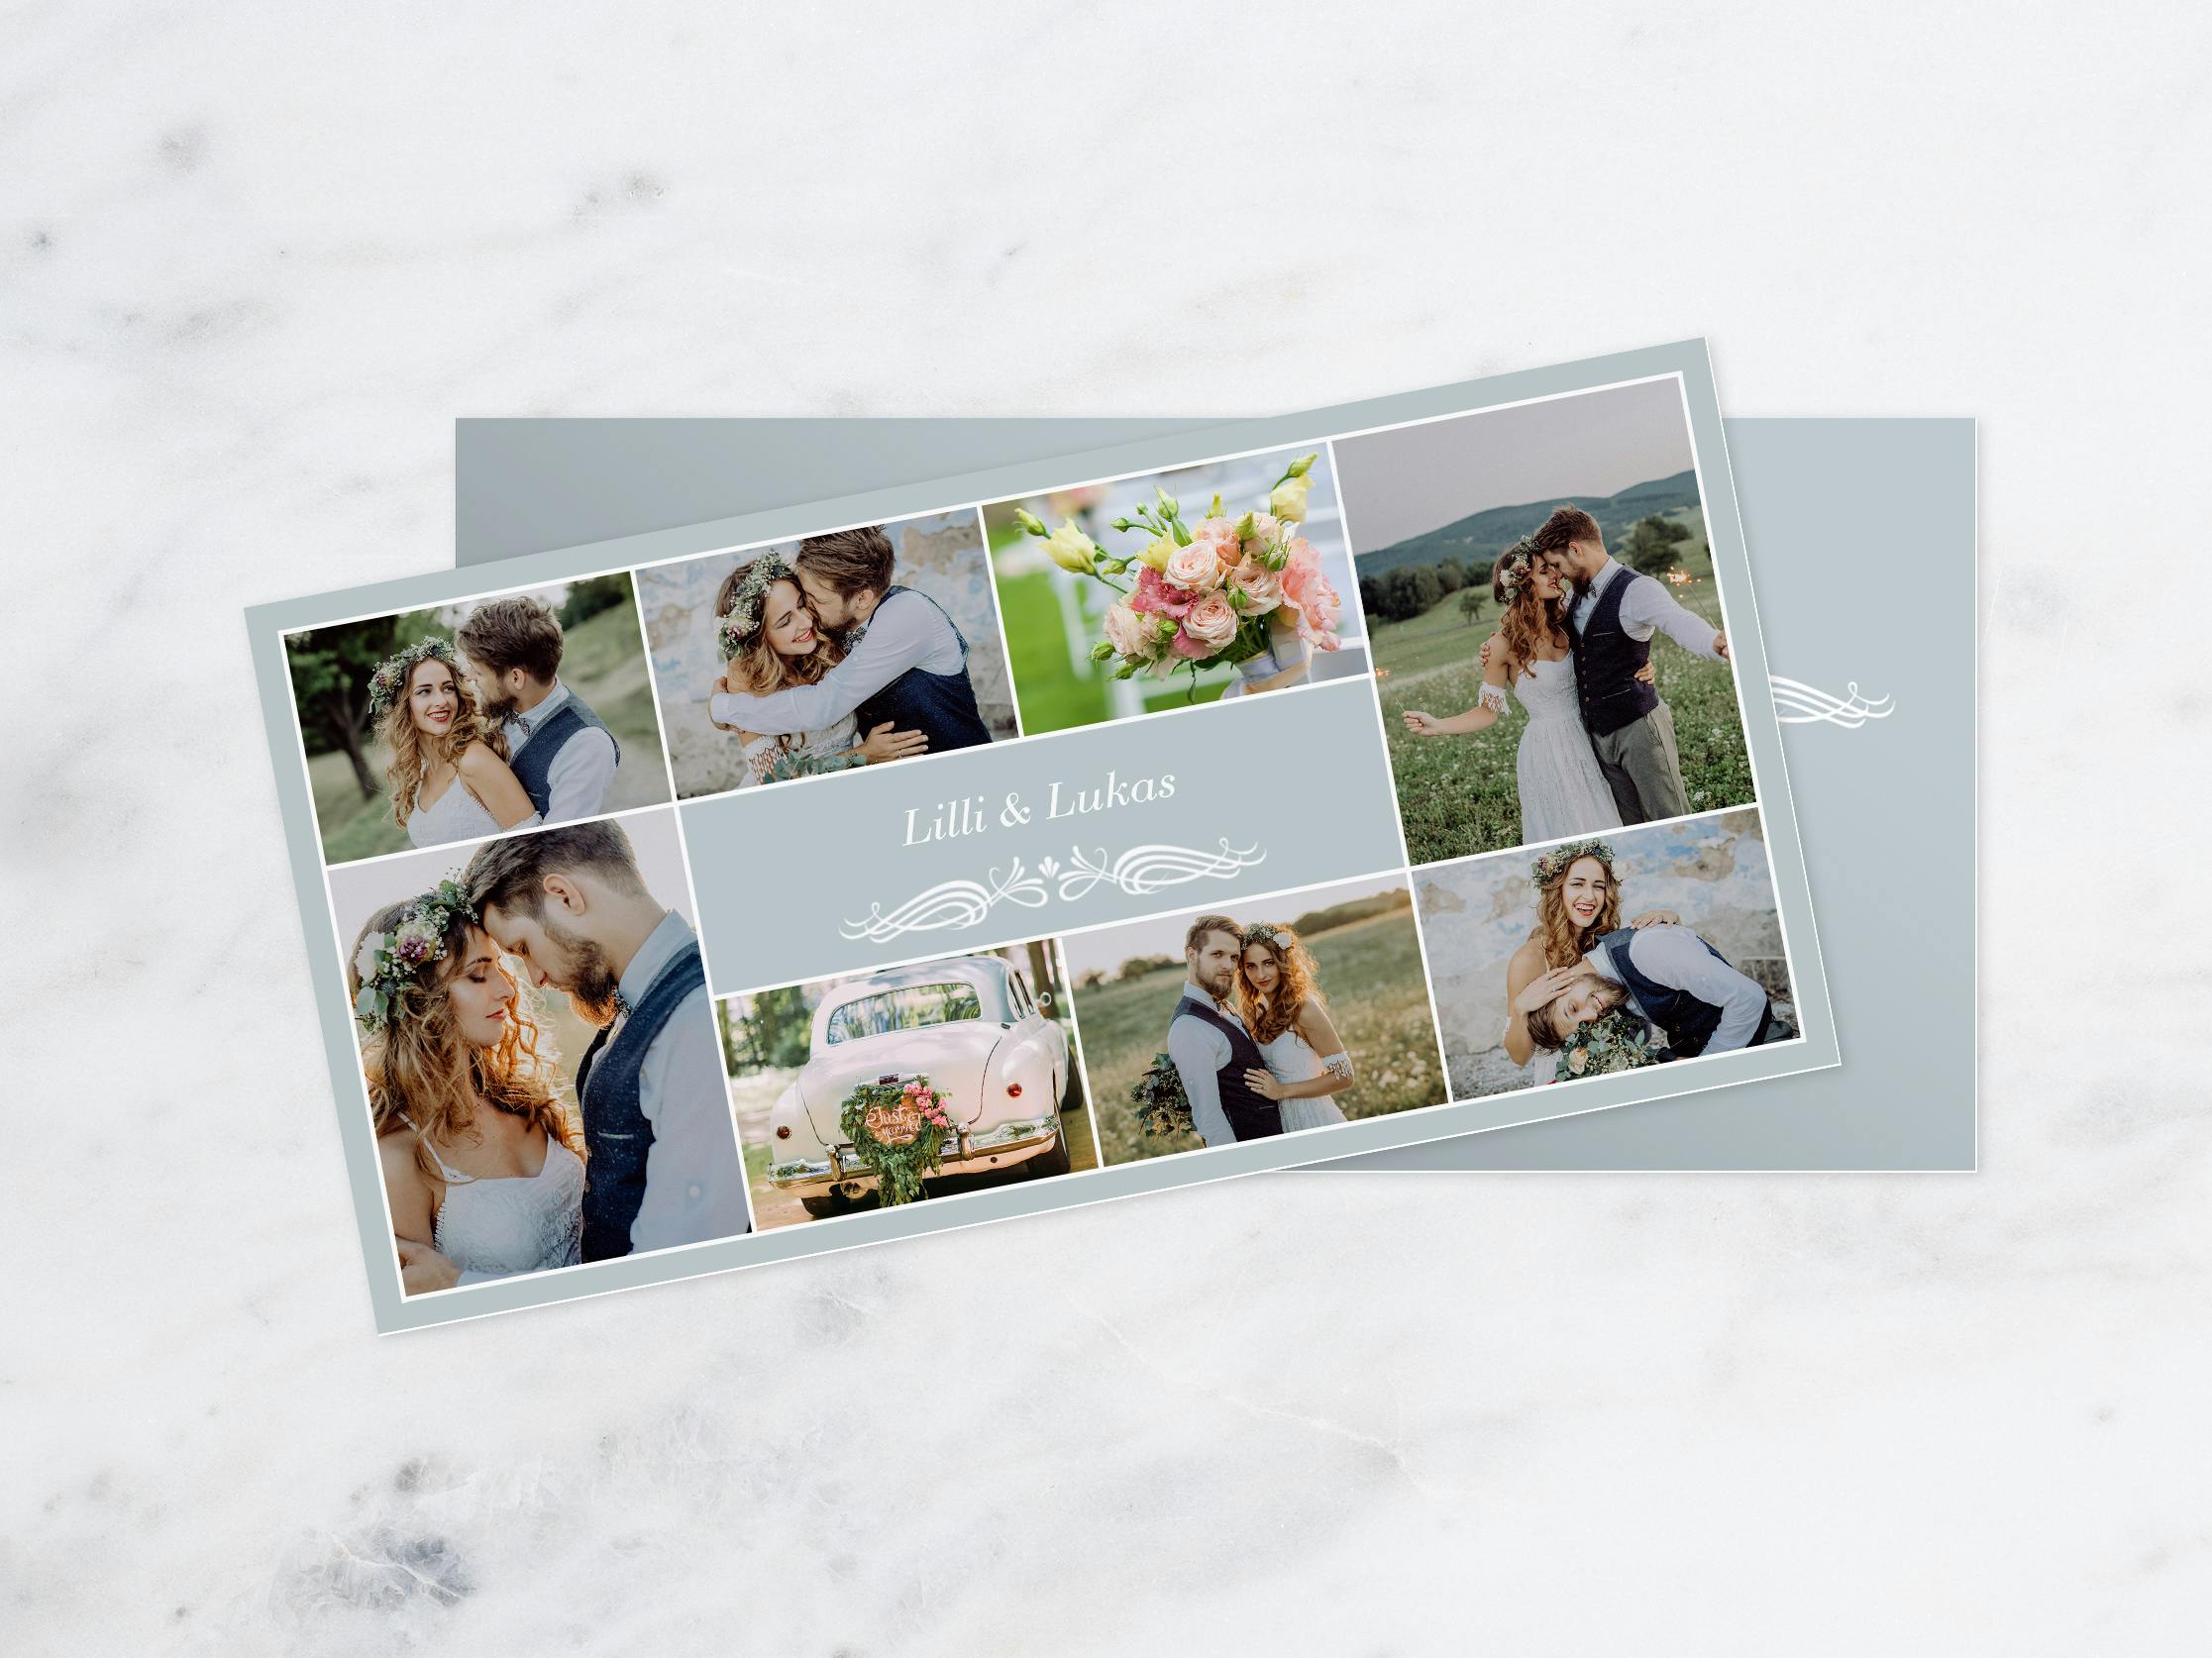 Carte de vœux avec photos de mariage et l'inscription "Lilli & Lukas"